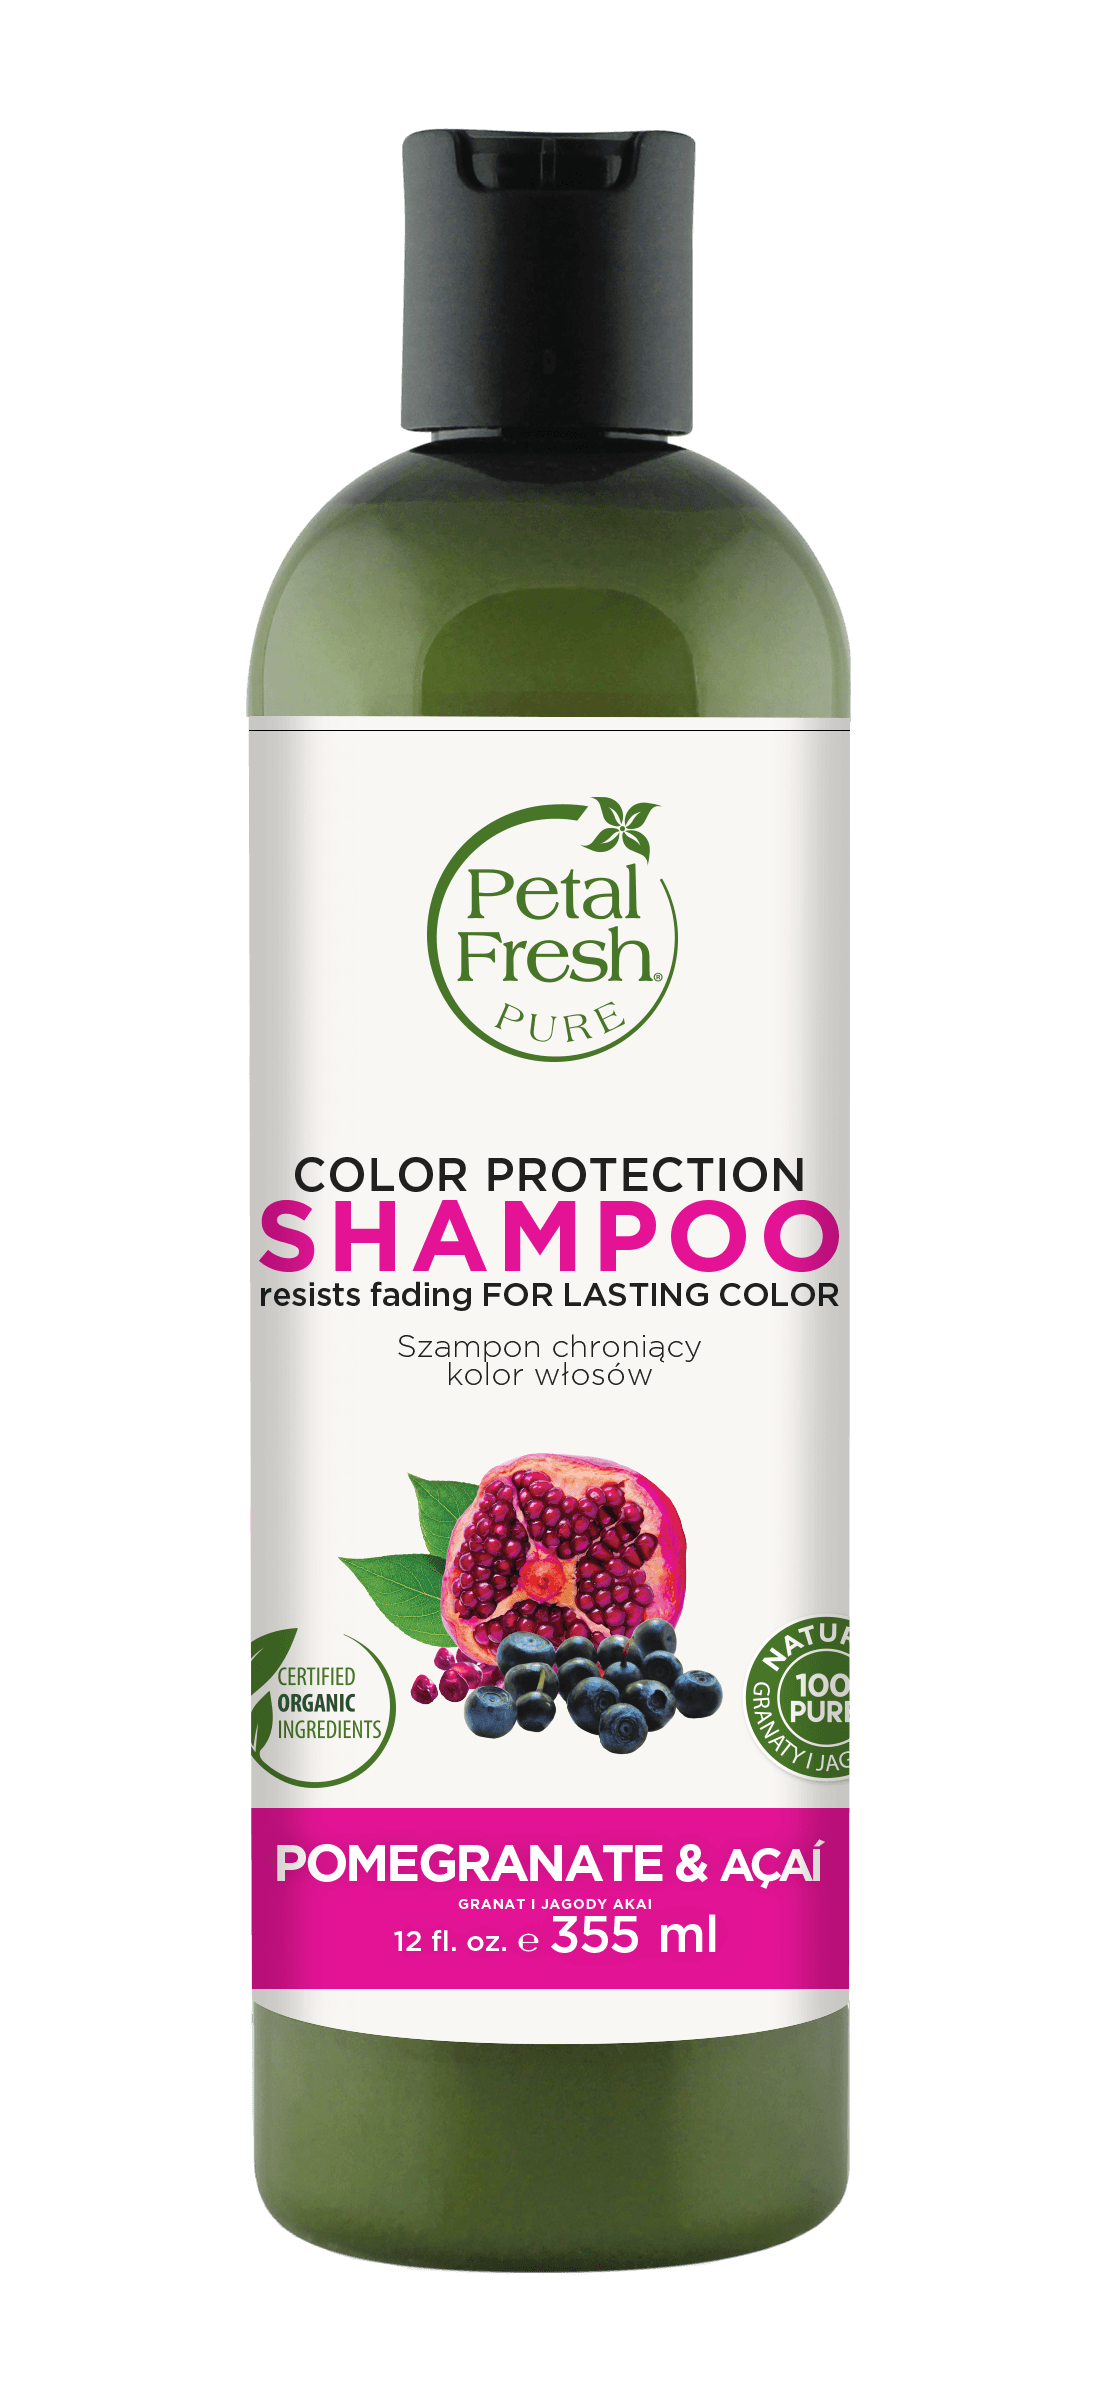 petal freshpurenaturalny szampon do włosów farbowanych granat i acai